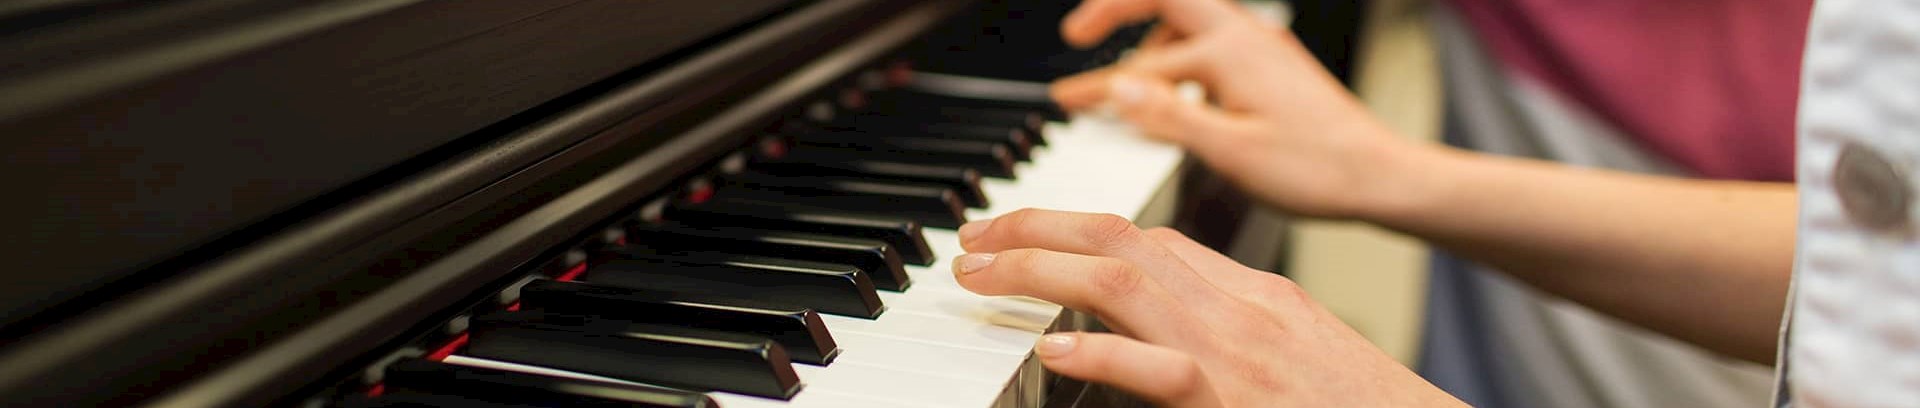 Hænder der spiller klaver